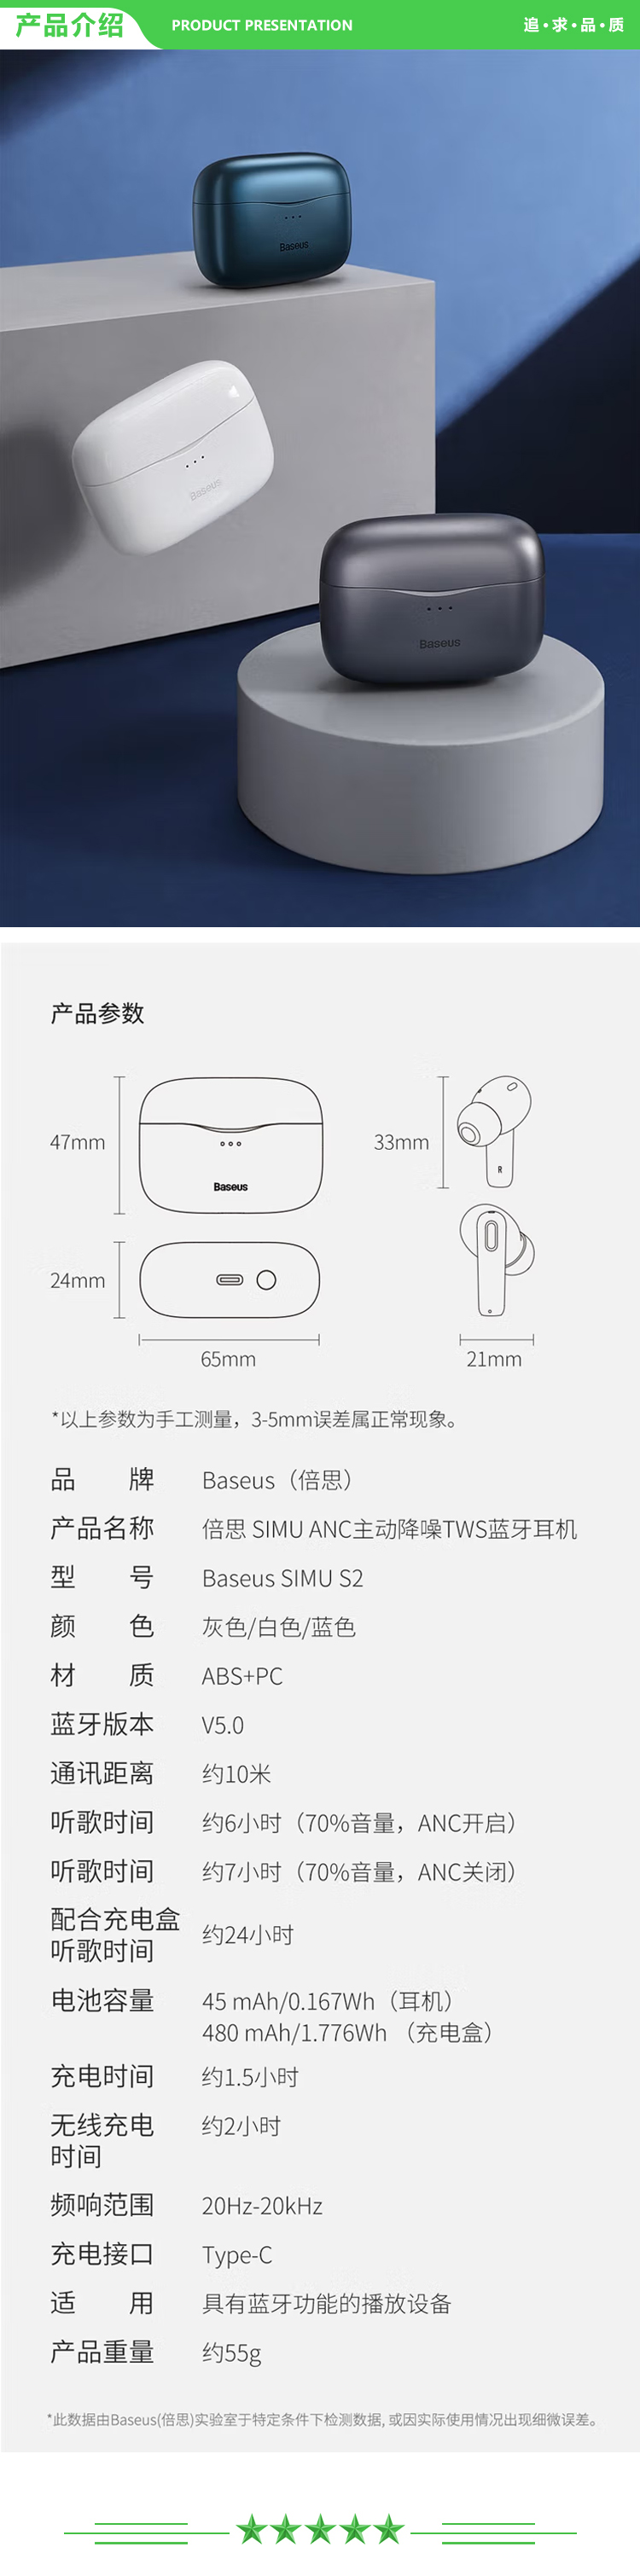 倍思 Baseus S2 蓝色 真无线蓝牙耳机 ANC主动降噪带无线充入耳式运动跑步游戏音乐耳麦通用.jpg